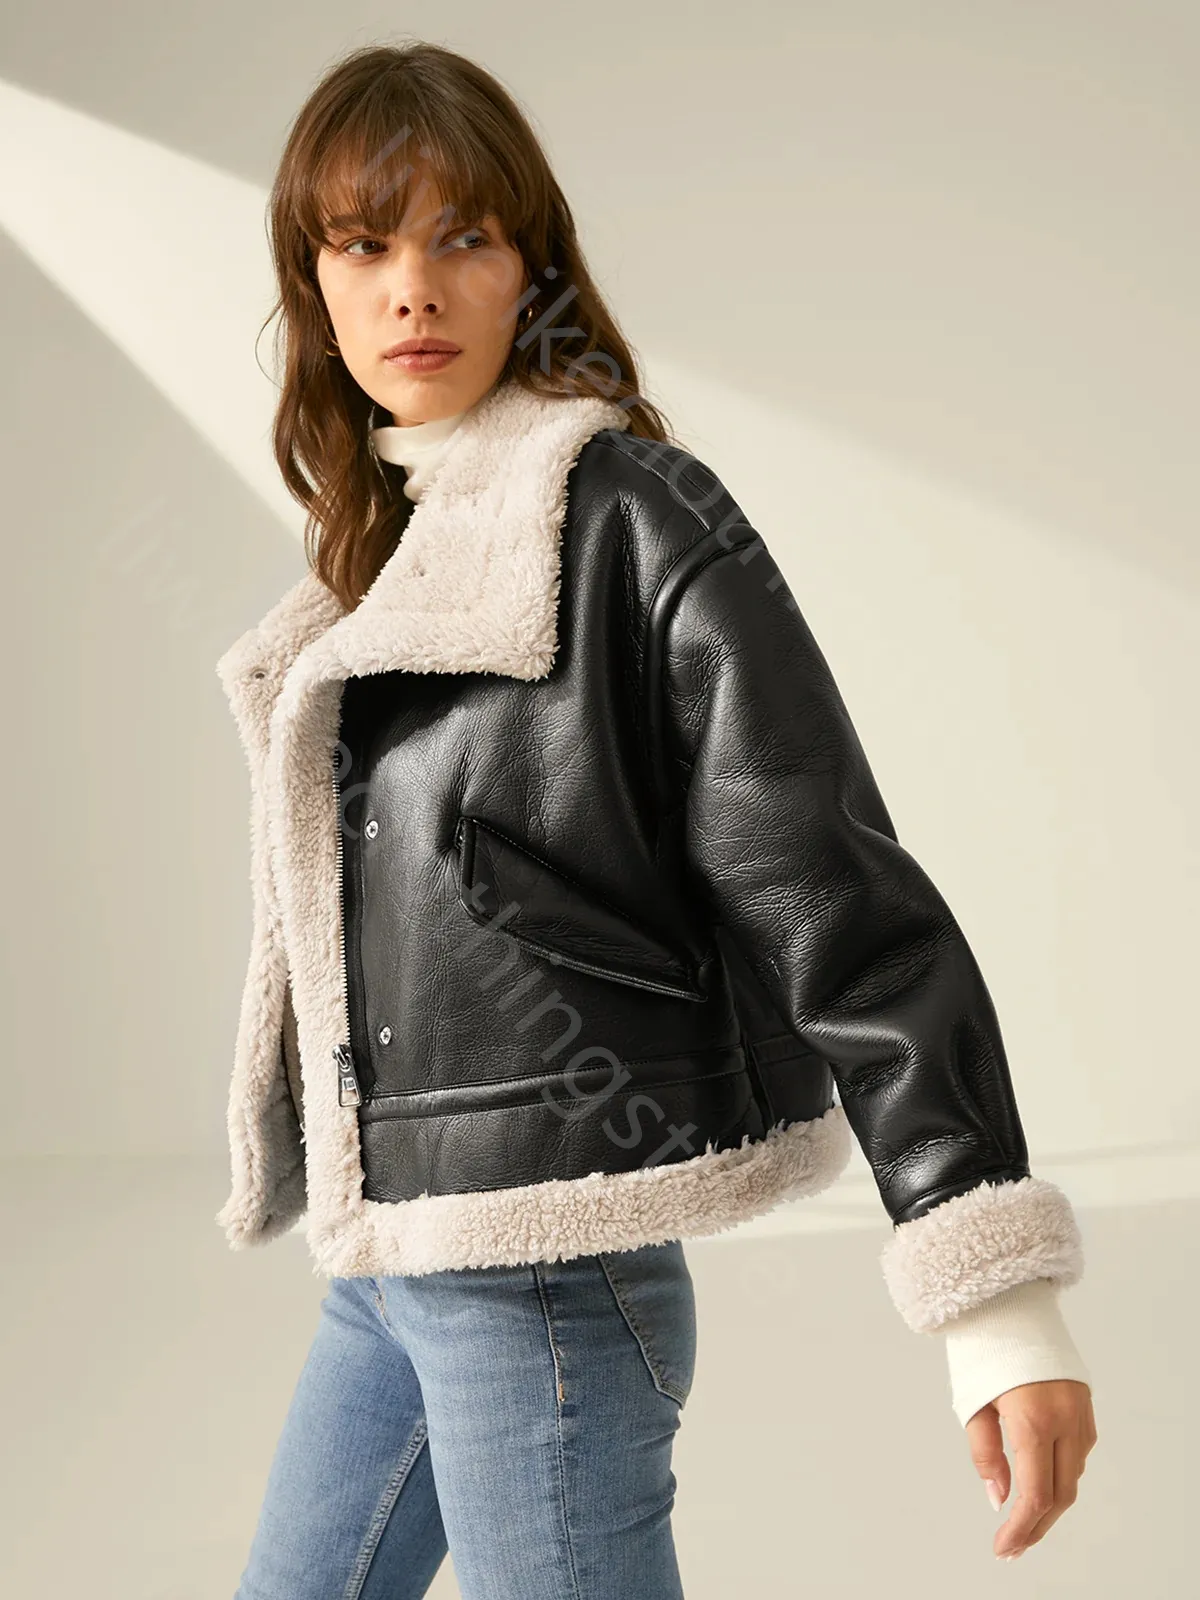 シェルパ裏地シャーリングレザーフライトパケットバイカー偽の革ジャケット女性厚い革のコート冬の革服人工革